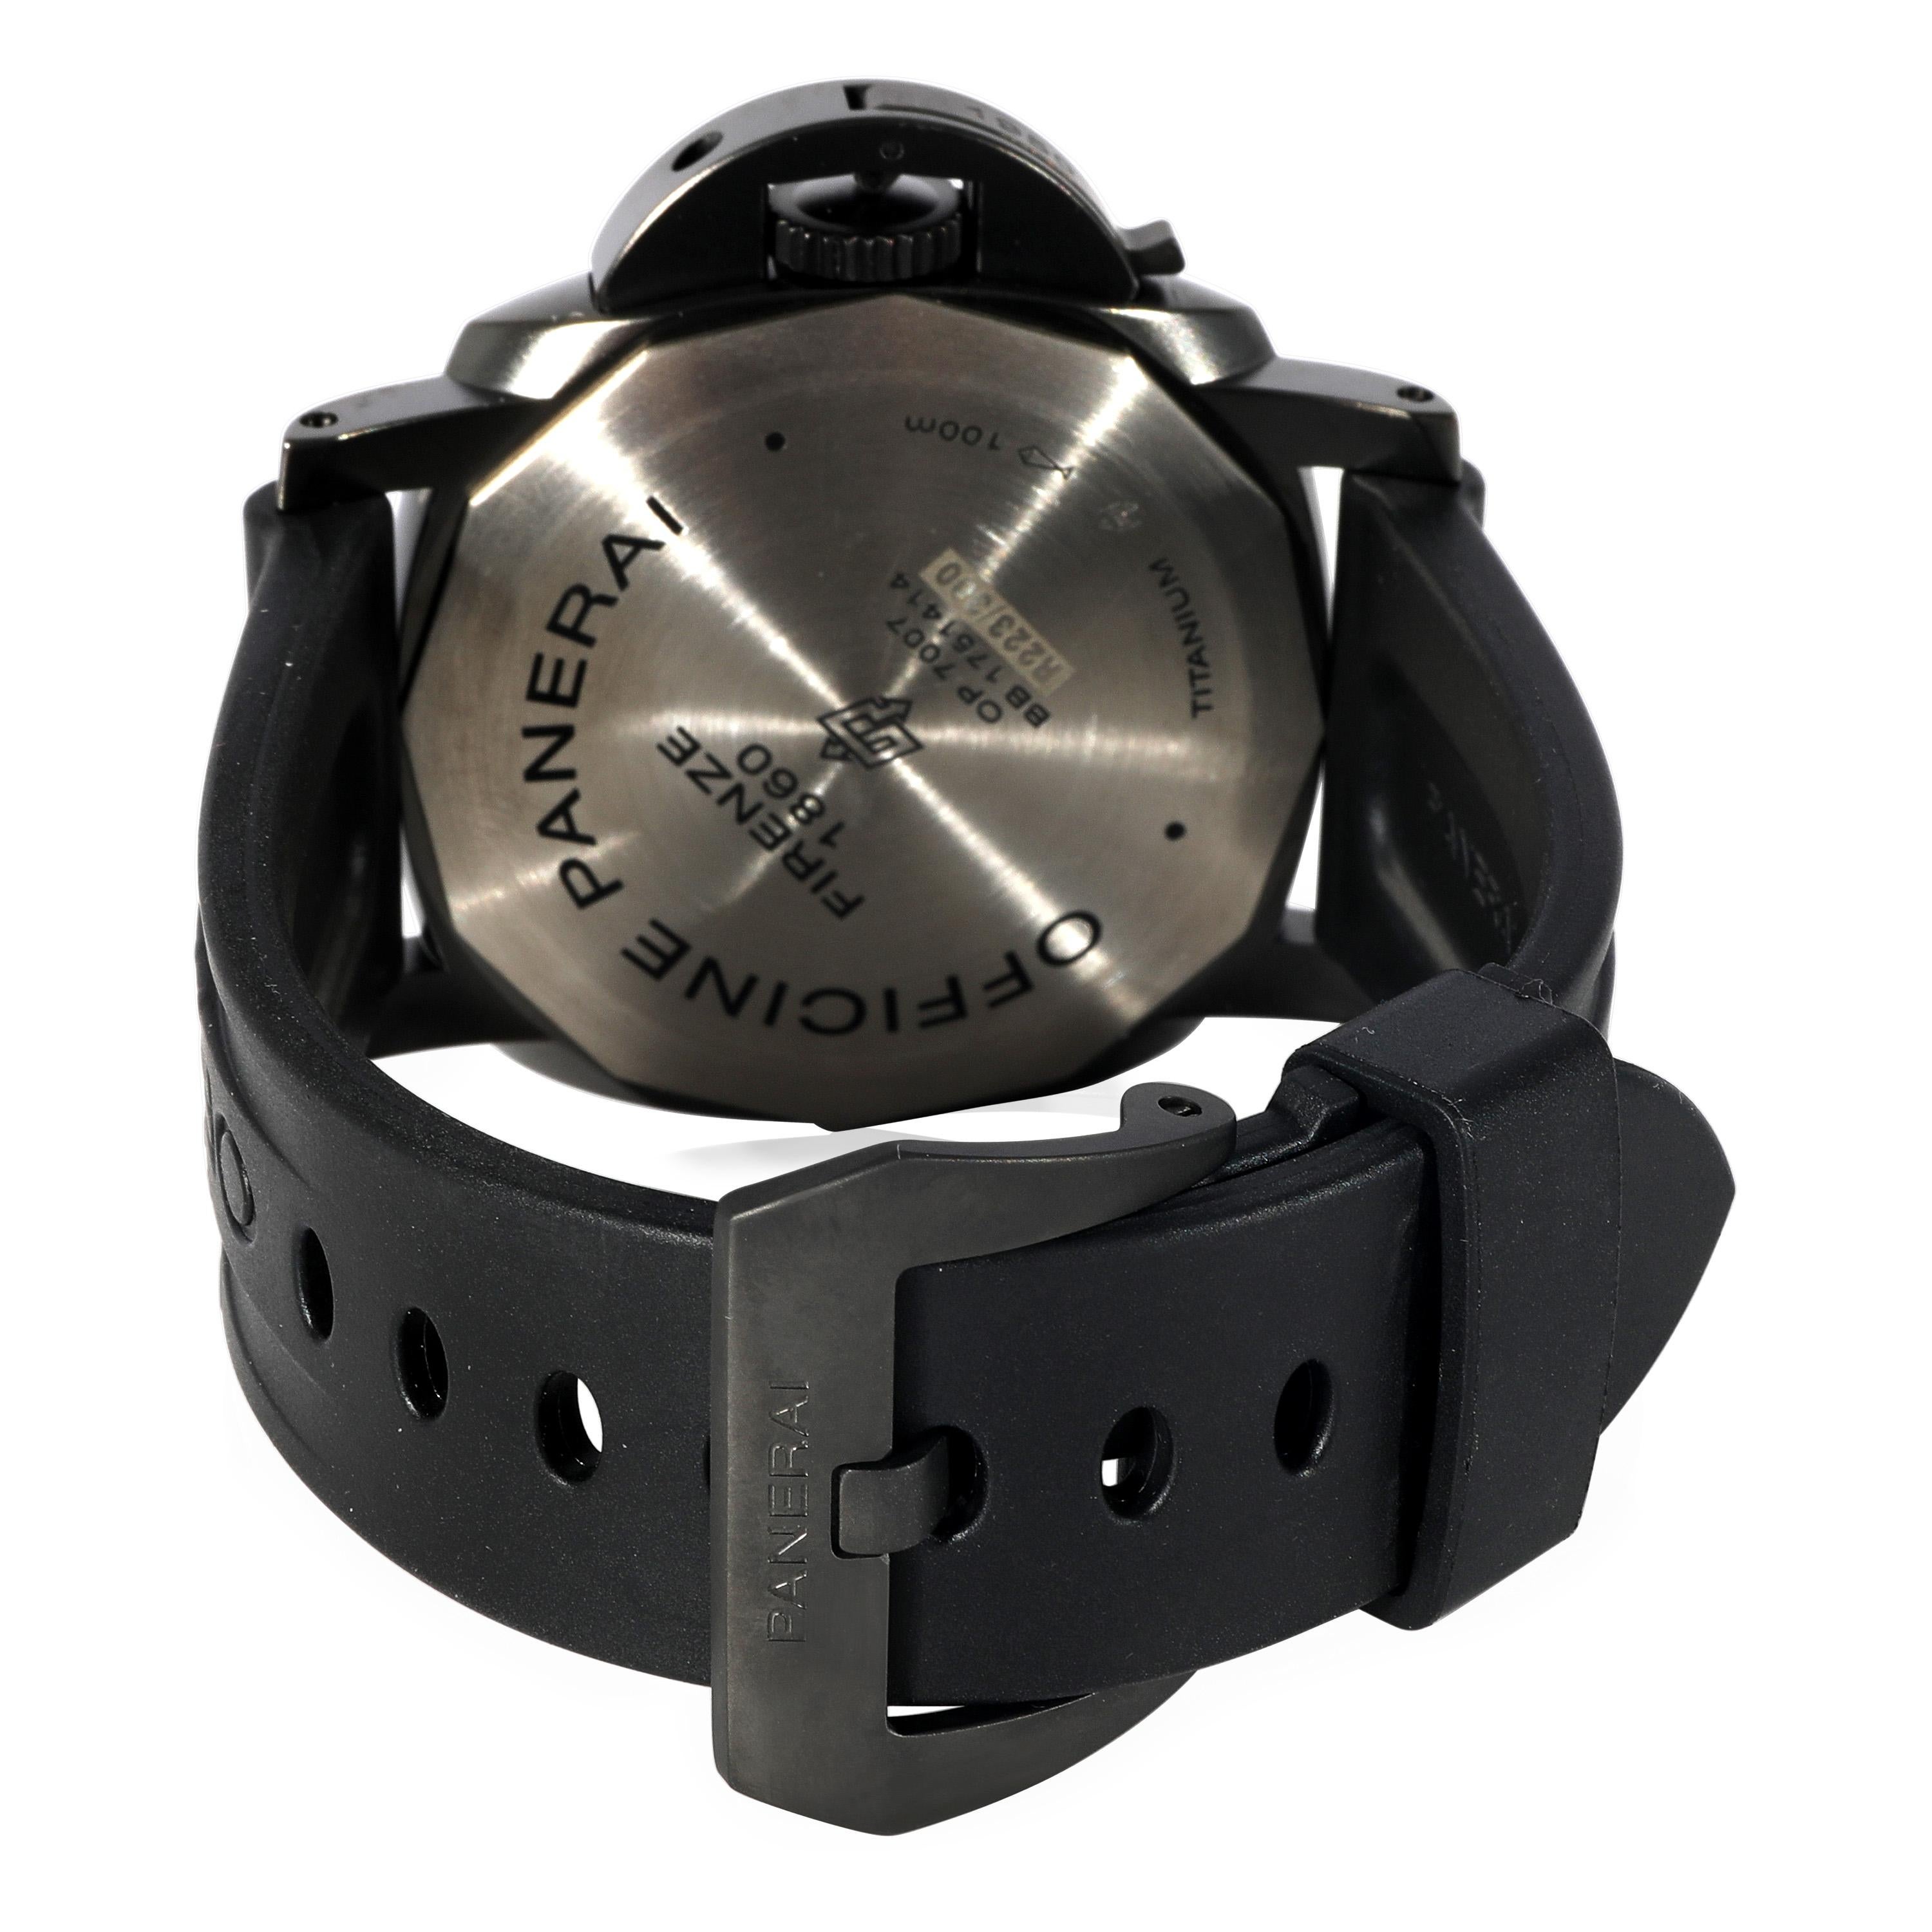 Panerai Luminor 1950 Titanio PAM00617 Men's Watch in  Titanium

SKU: 125214

PRIMARY DETAILS
Brand: Panerai
Model: Luminor 1950 Titanio
Country of Origin: Switzerland
Movement Type: Mechanical: Hand-winding
Year Manufactured: 2015
Year of